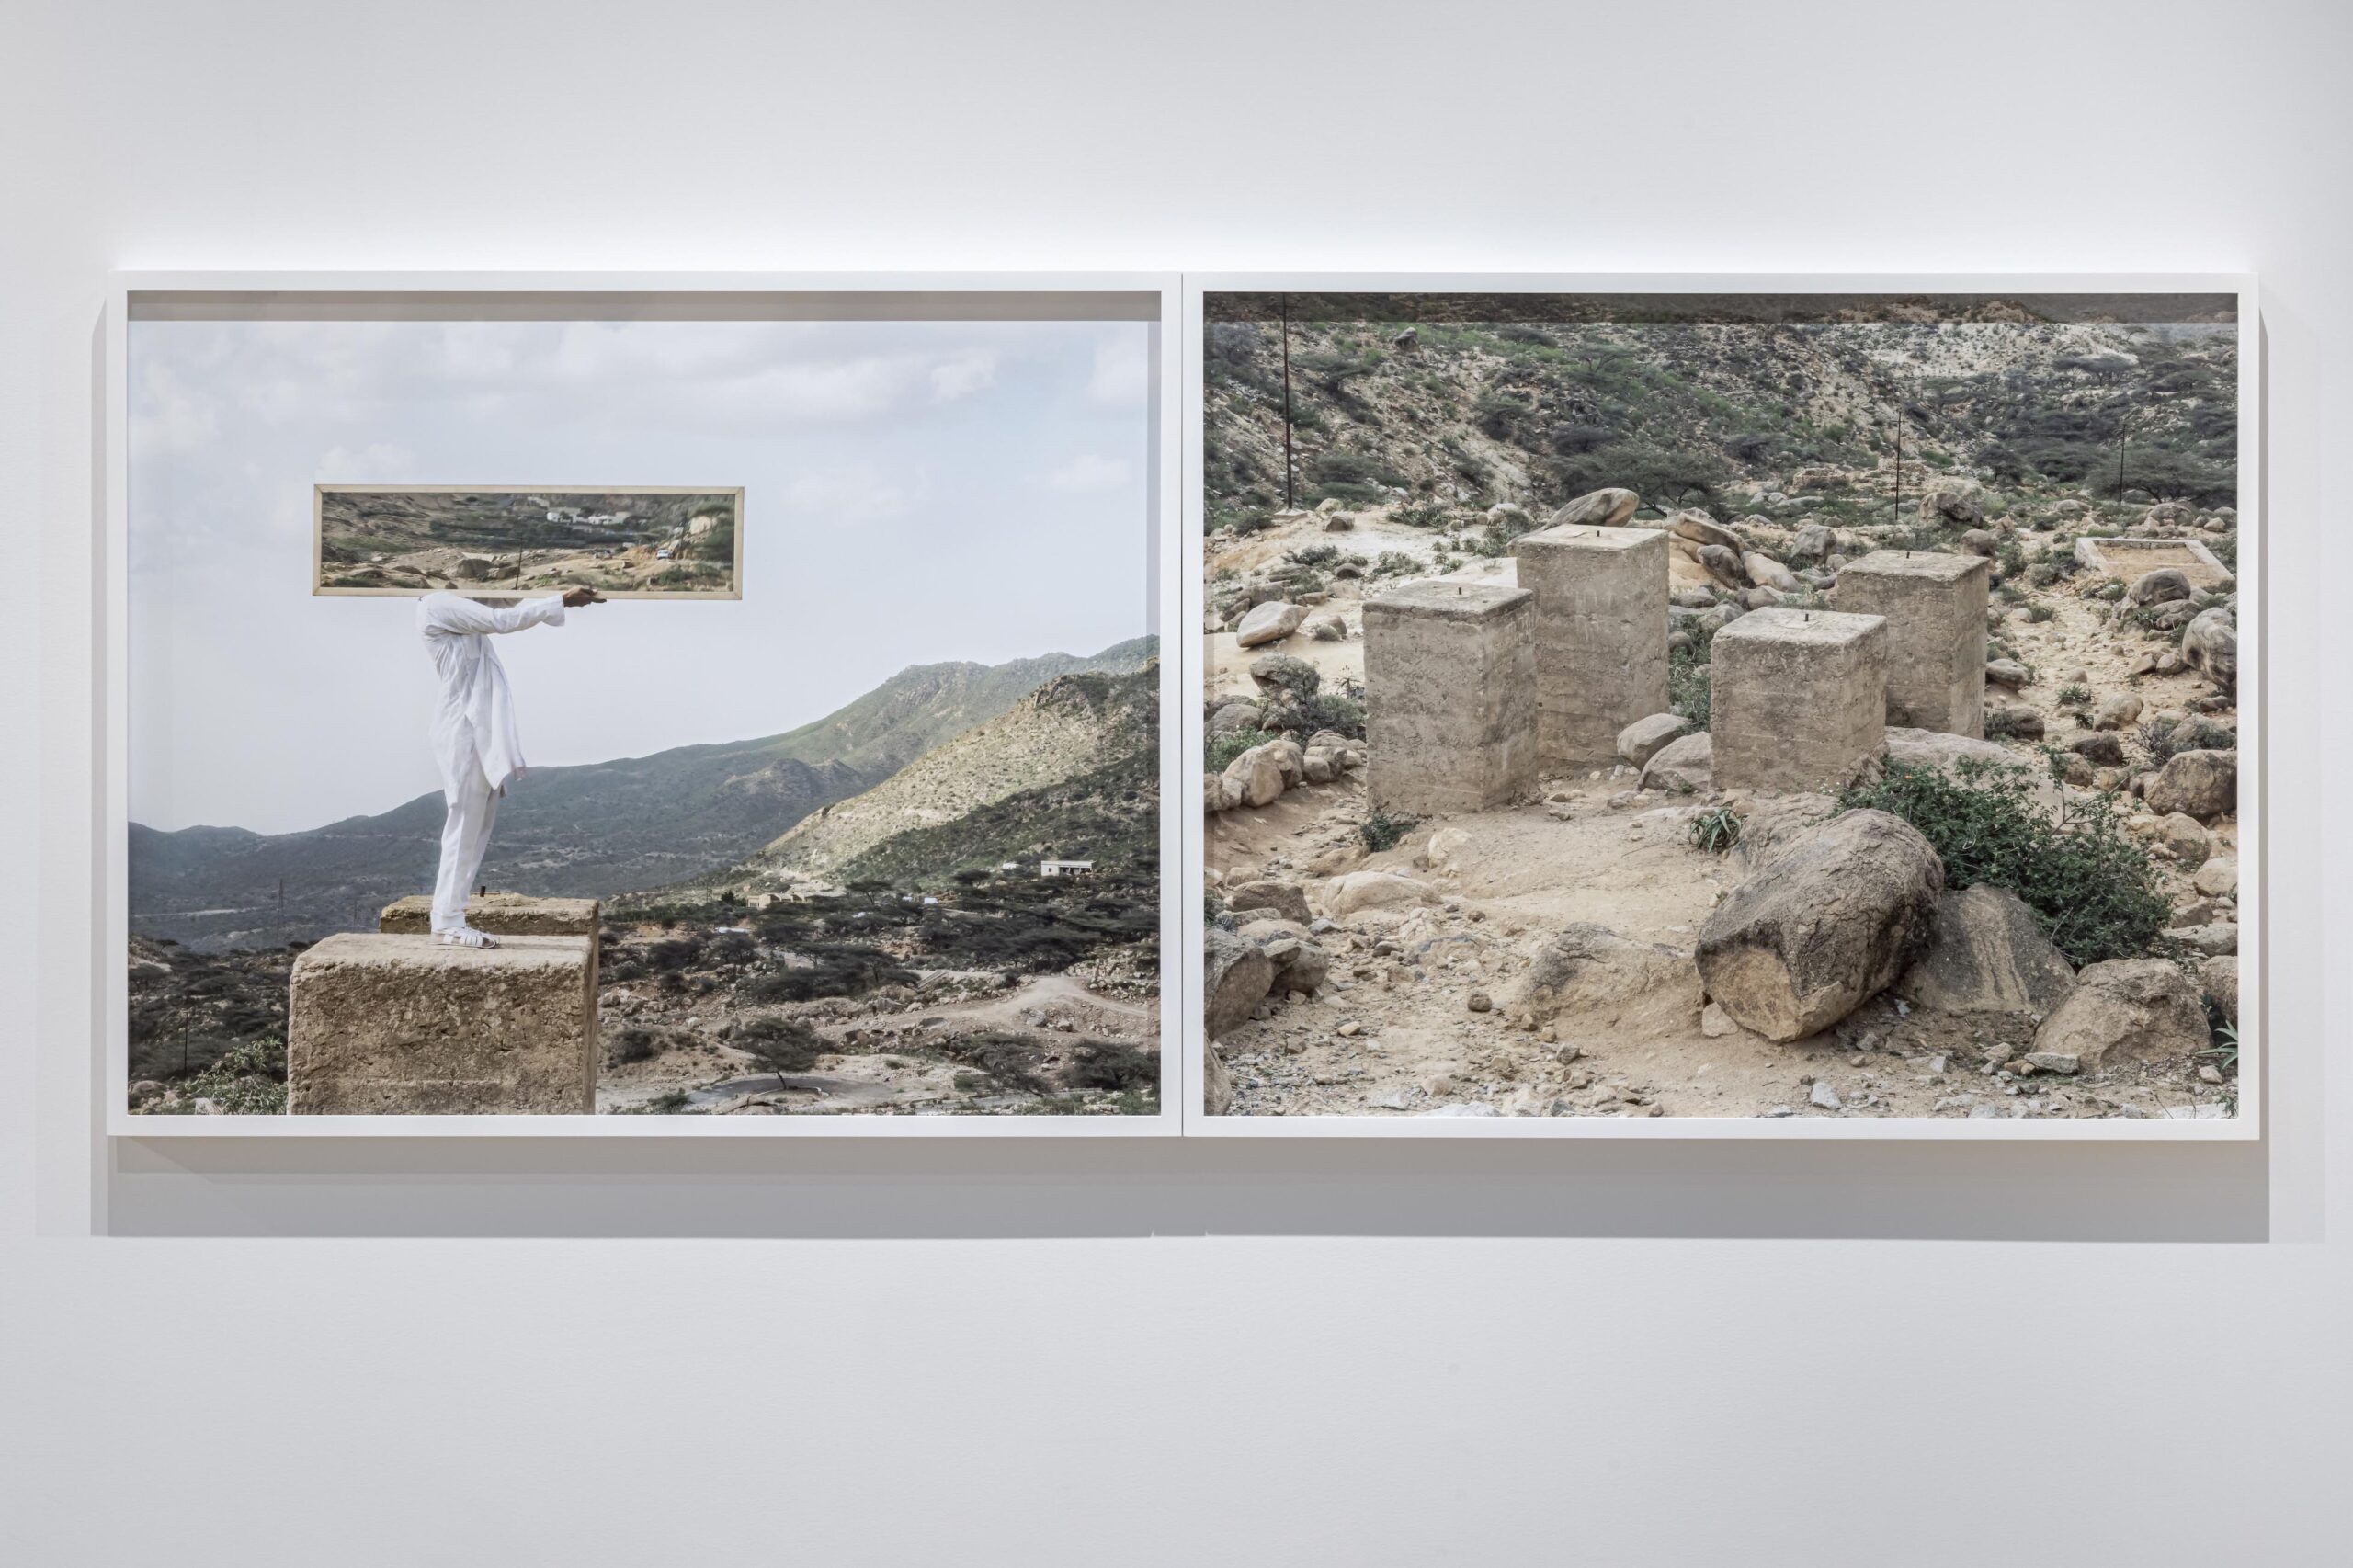 Left: Untitled (Epilogue IV), Nefasit, Eritrea, 2019